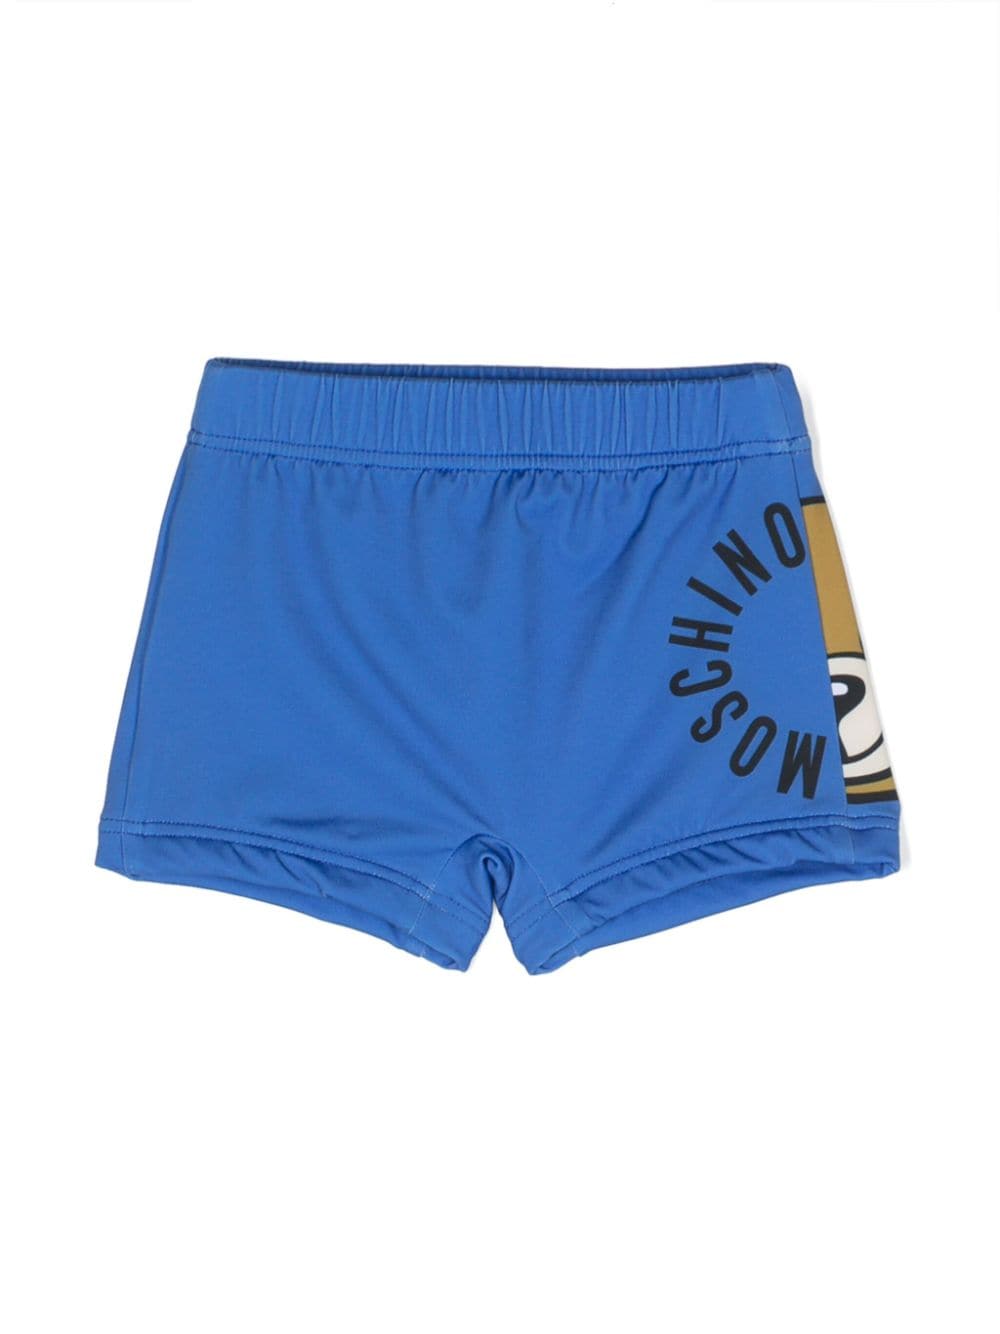 Baby blue swim shorts with logo